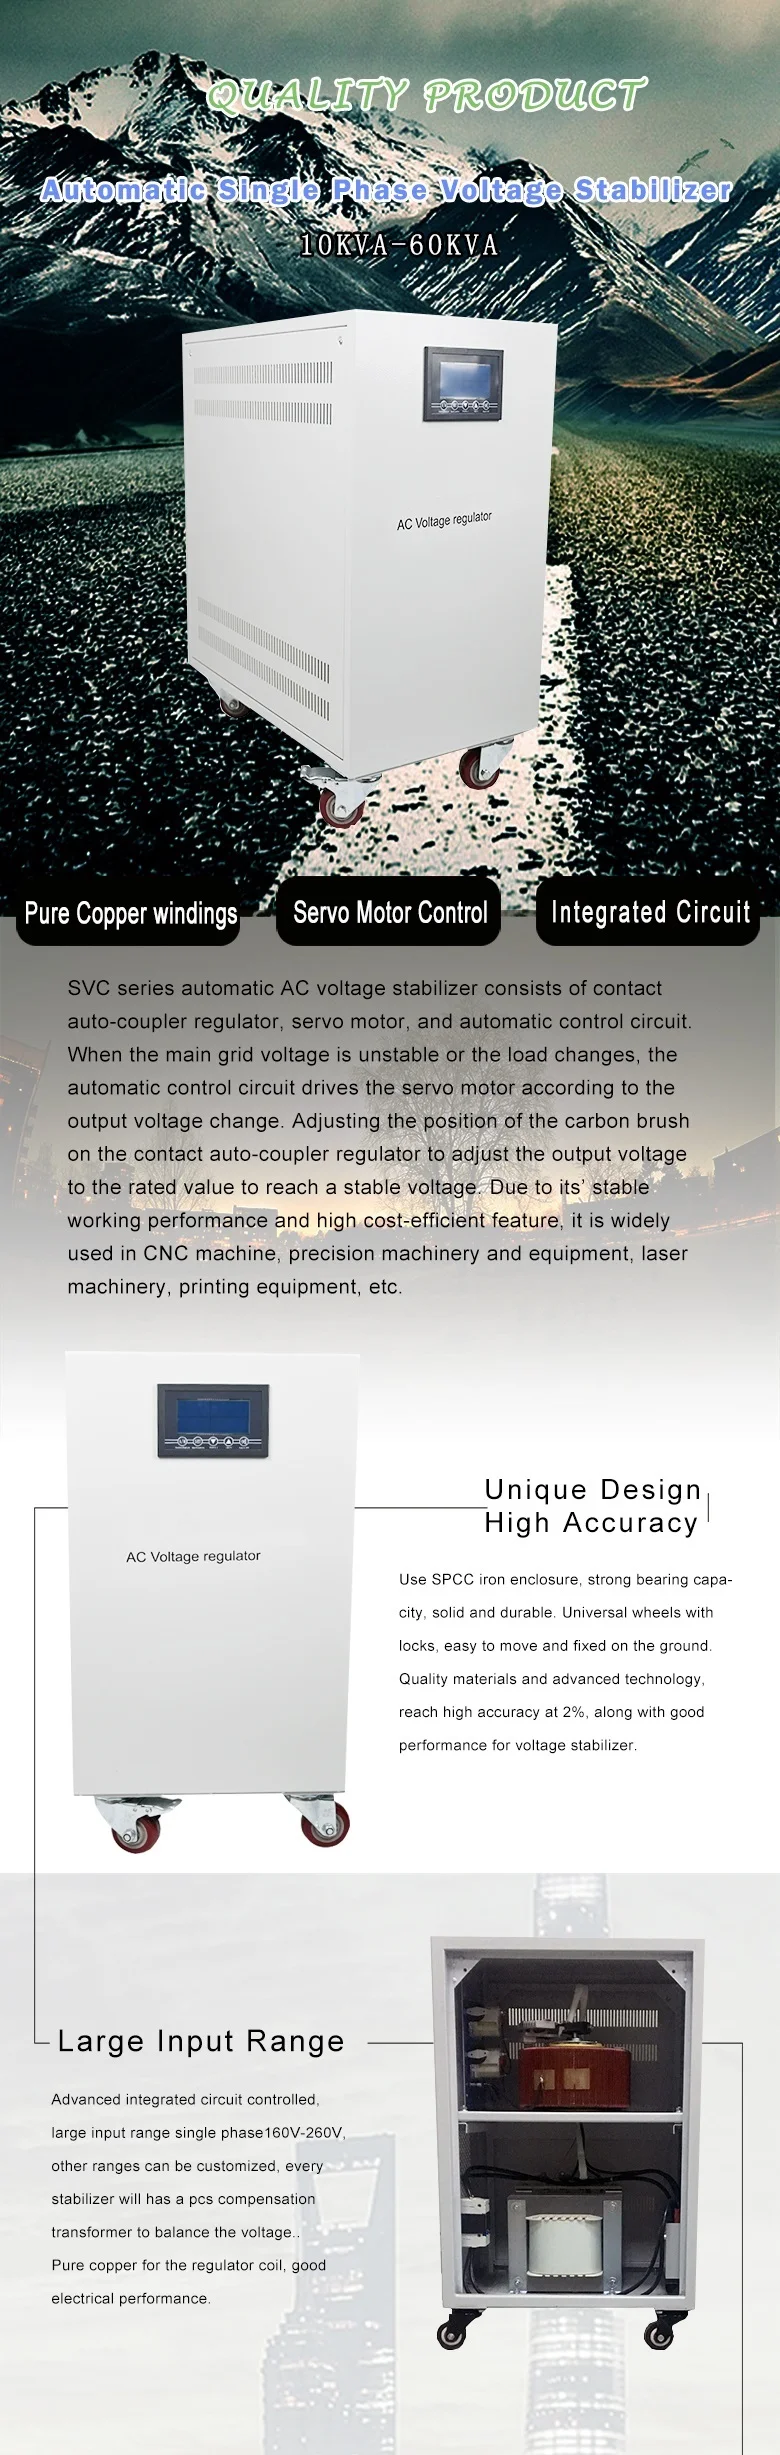 ABOT 150V-260V Input 220V Output Single Phase SVC Voltage Regulator